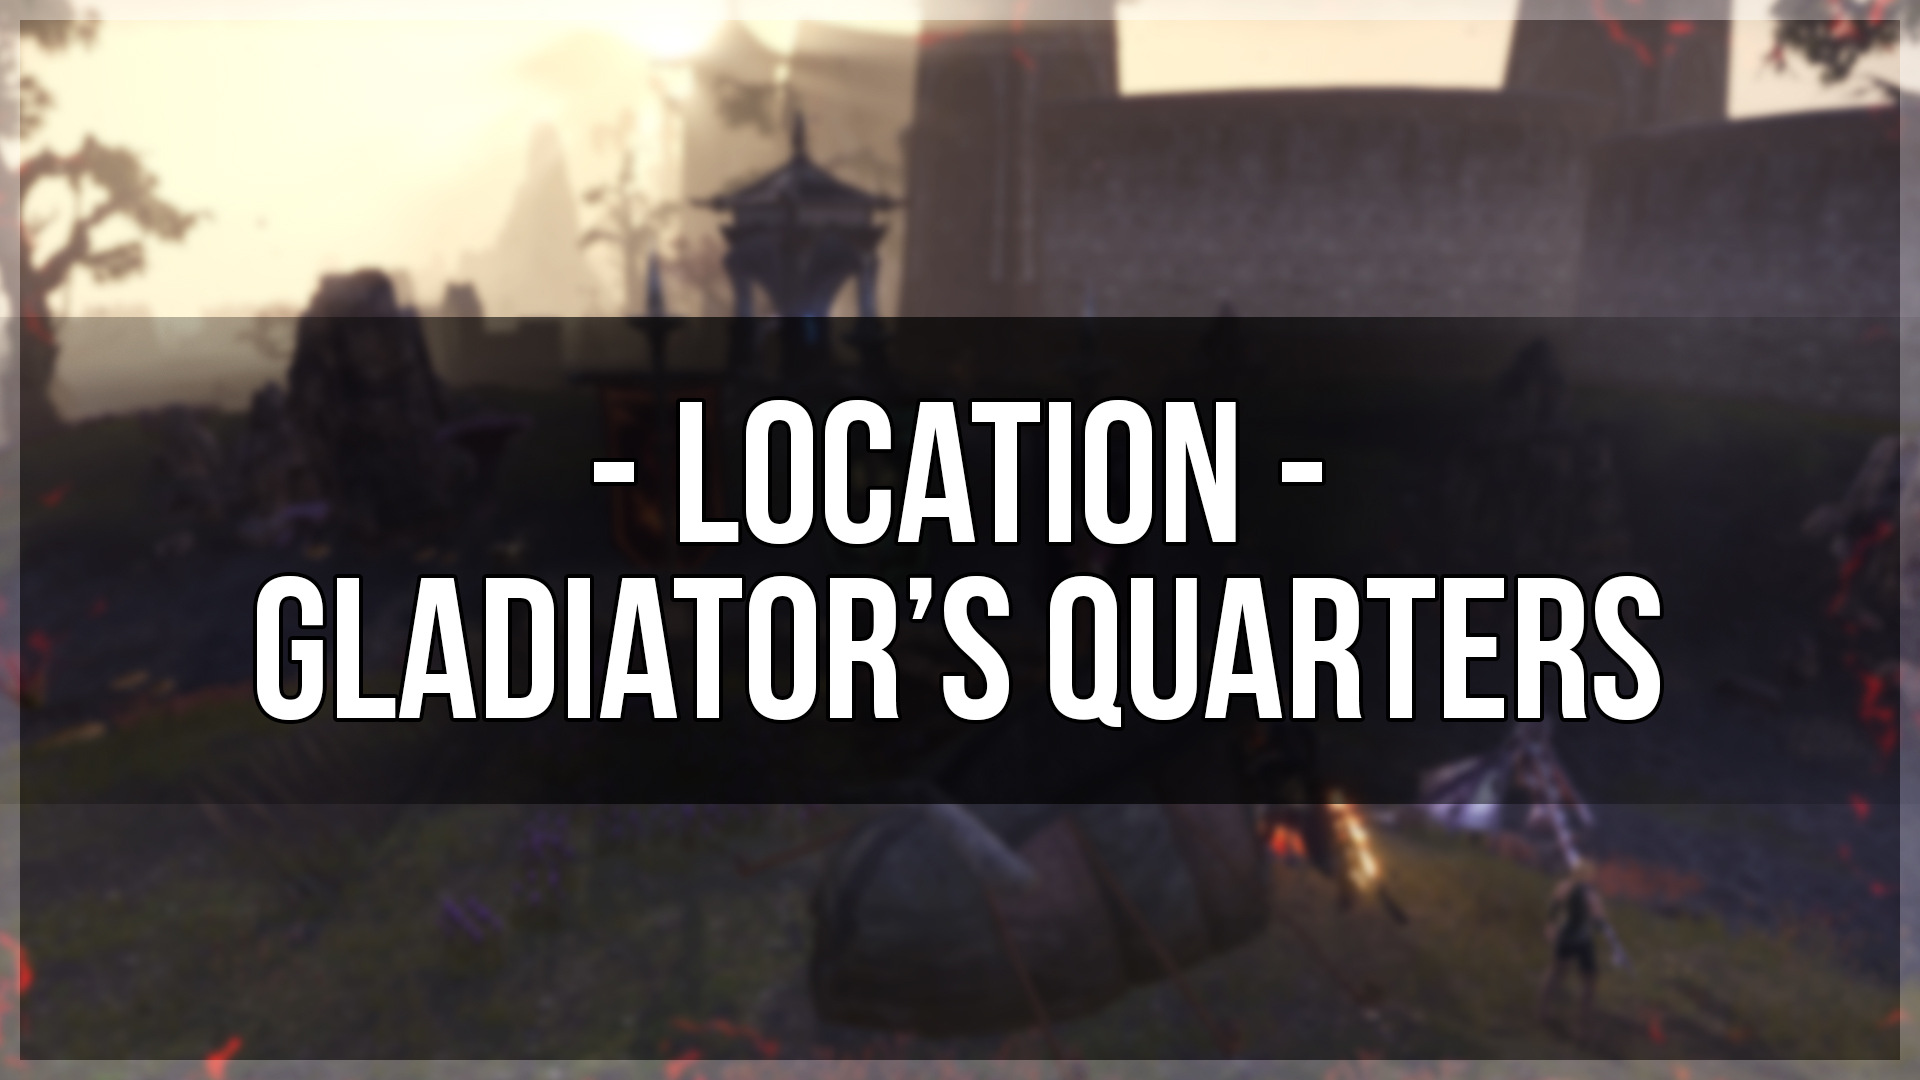 Gladiator's Quarters